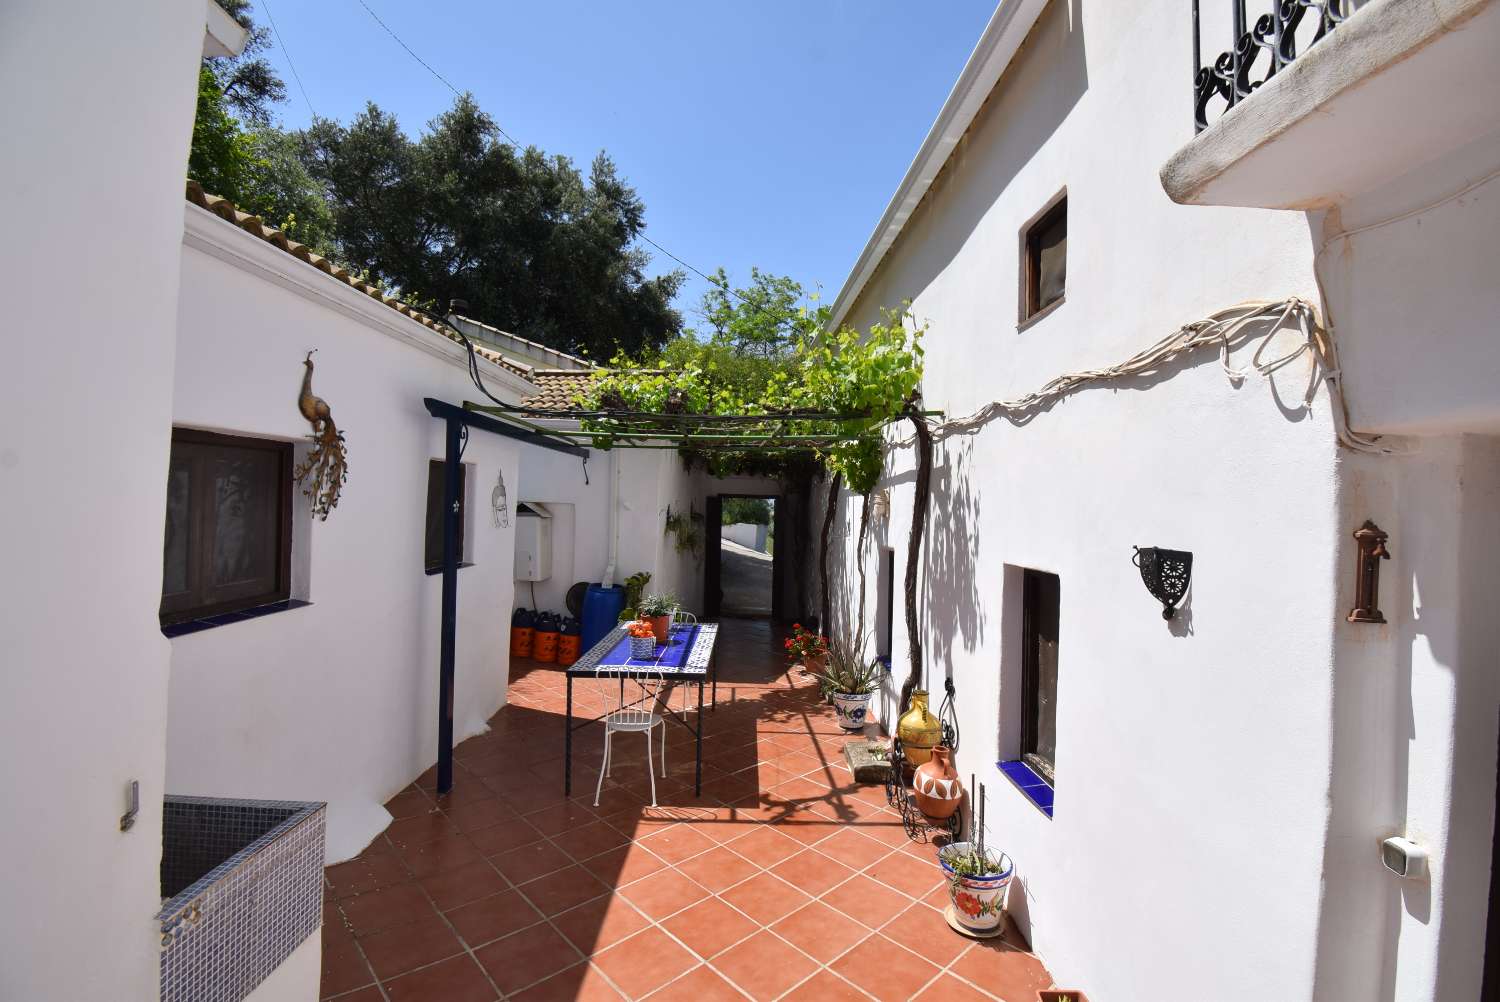 Karakteristieke Andalusische boerderijstijl met 2 aparte appartementen